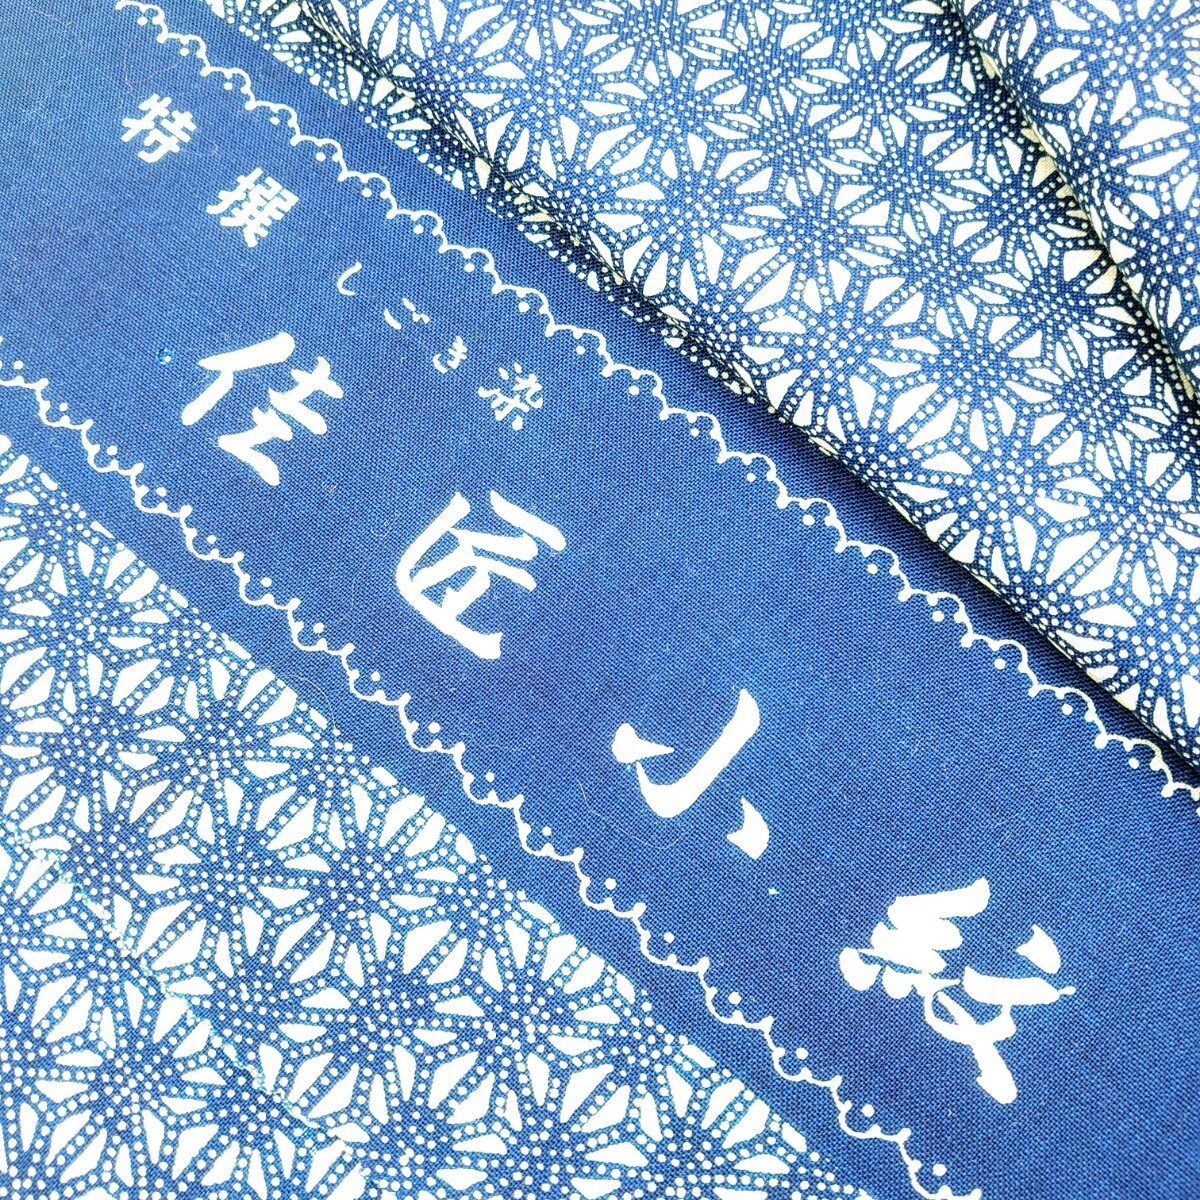 540[ не использовался хранение товар ] специальный отбор ..... Takumi мелкий рисунок упрощенный товар лен. лист узор ткань один .×37cm Япония античный кимоно европейская одежда юката переделка ткань ткань 